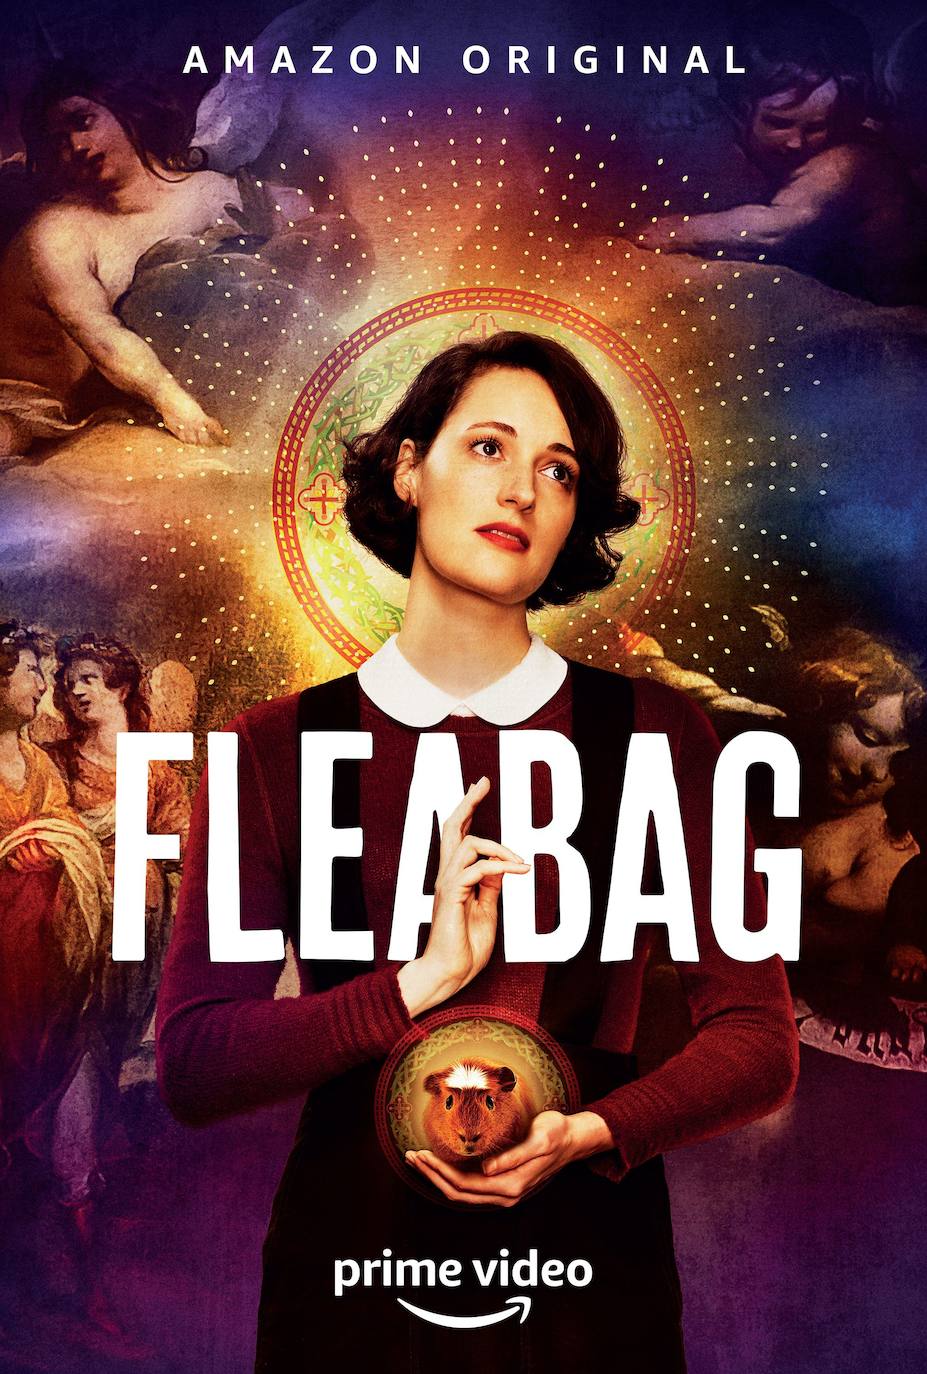 Fleabag (Amazon Prime) | Phoebe Waller-Bridge protagoniza esta historia sobre una mujer con una situación familiar complicada que además tiene problemas para mantener su estilo de vida.